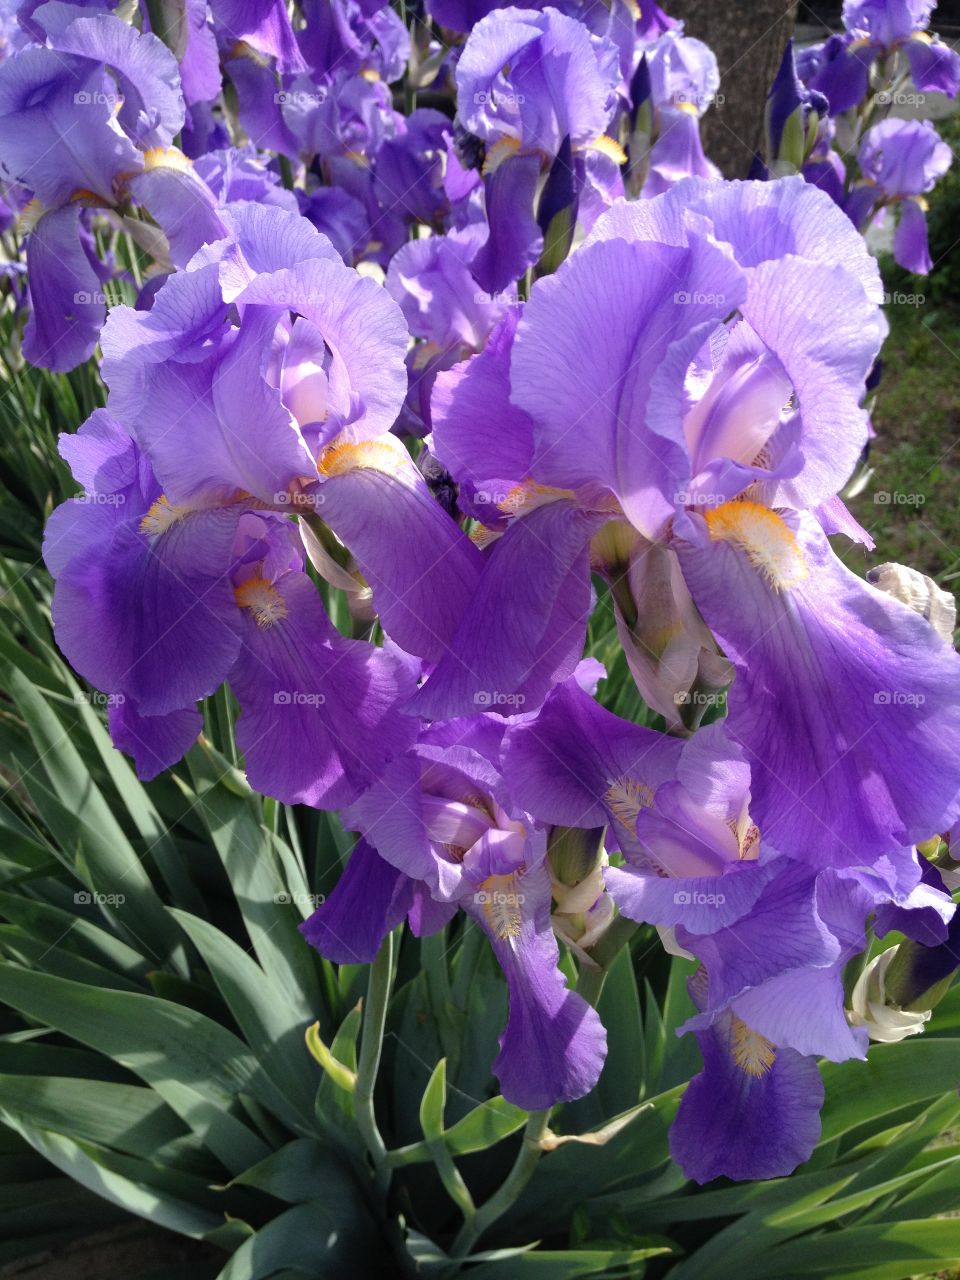 Irises. Lot of irises